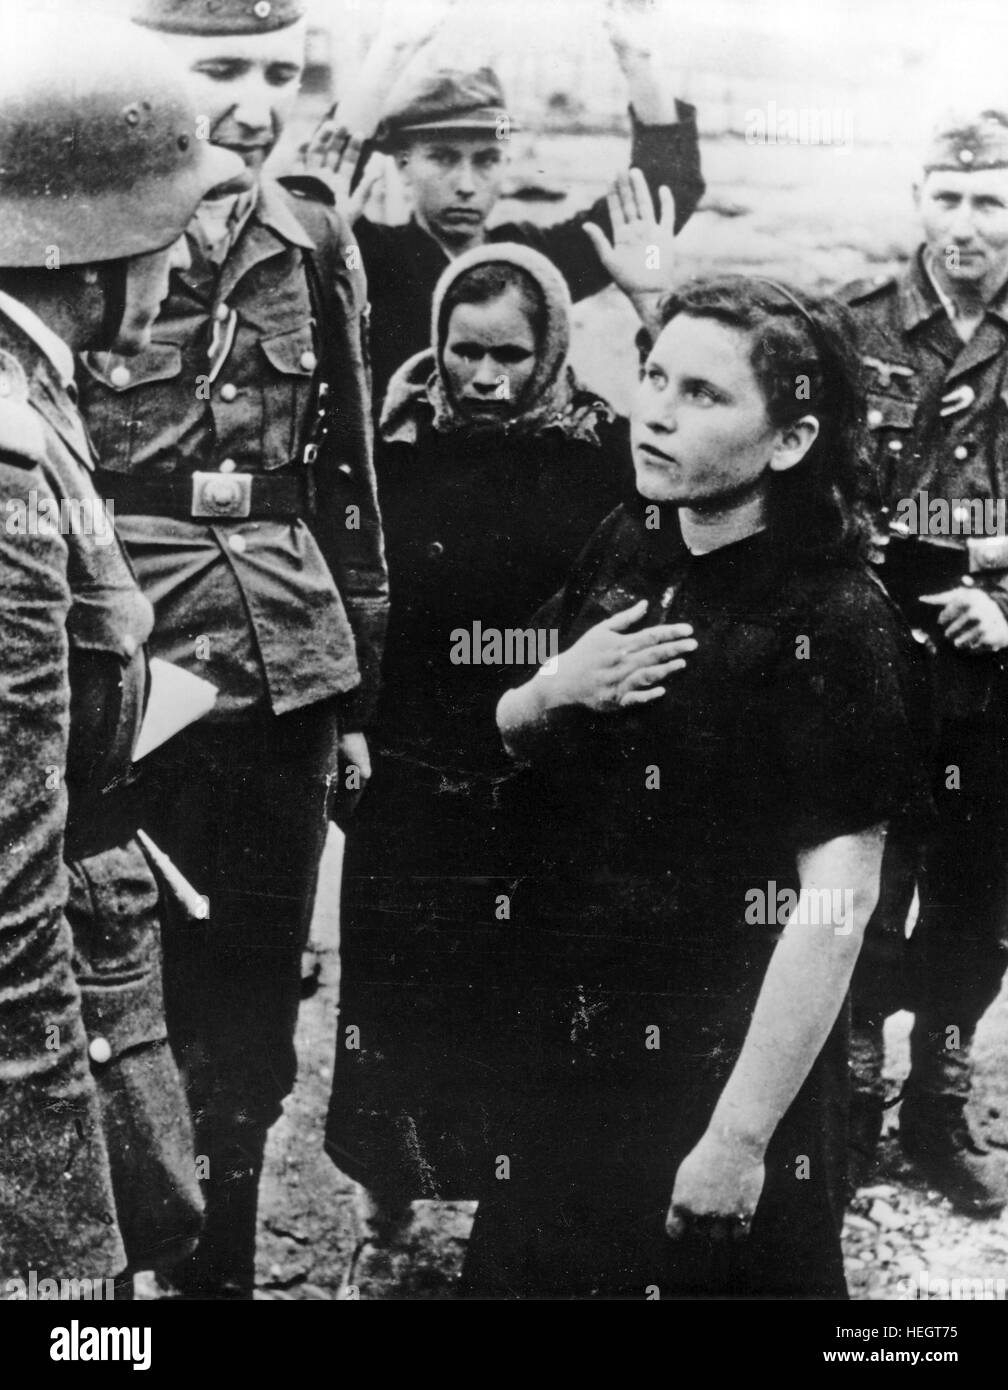 OPERATION BARBAROSSA 1941. Deutsche Soldaten Frage eine russische Frau während einer Razzia der mutmaßliche Partisanen.  Foto: Wehrmacht Beamten Stockfoto